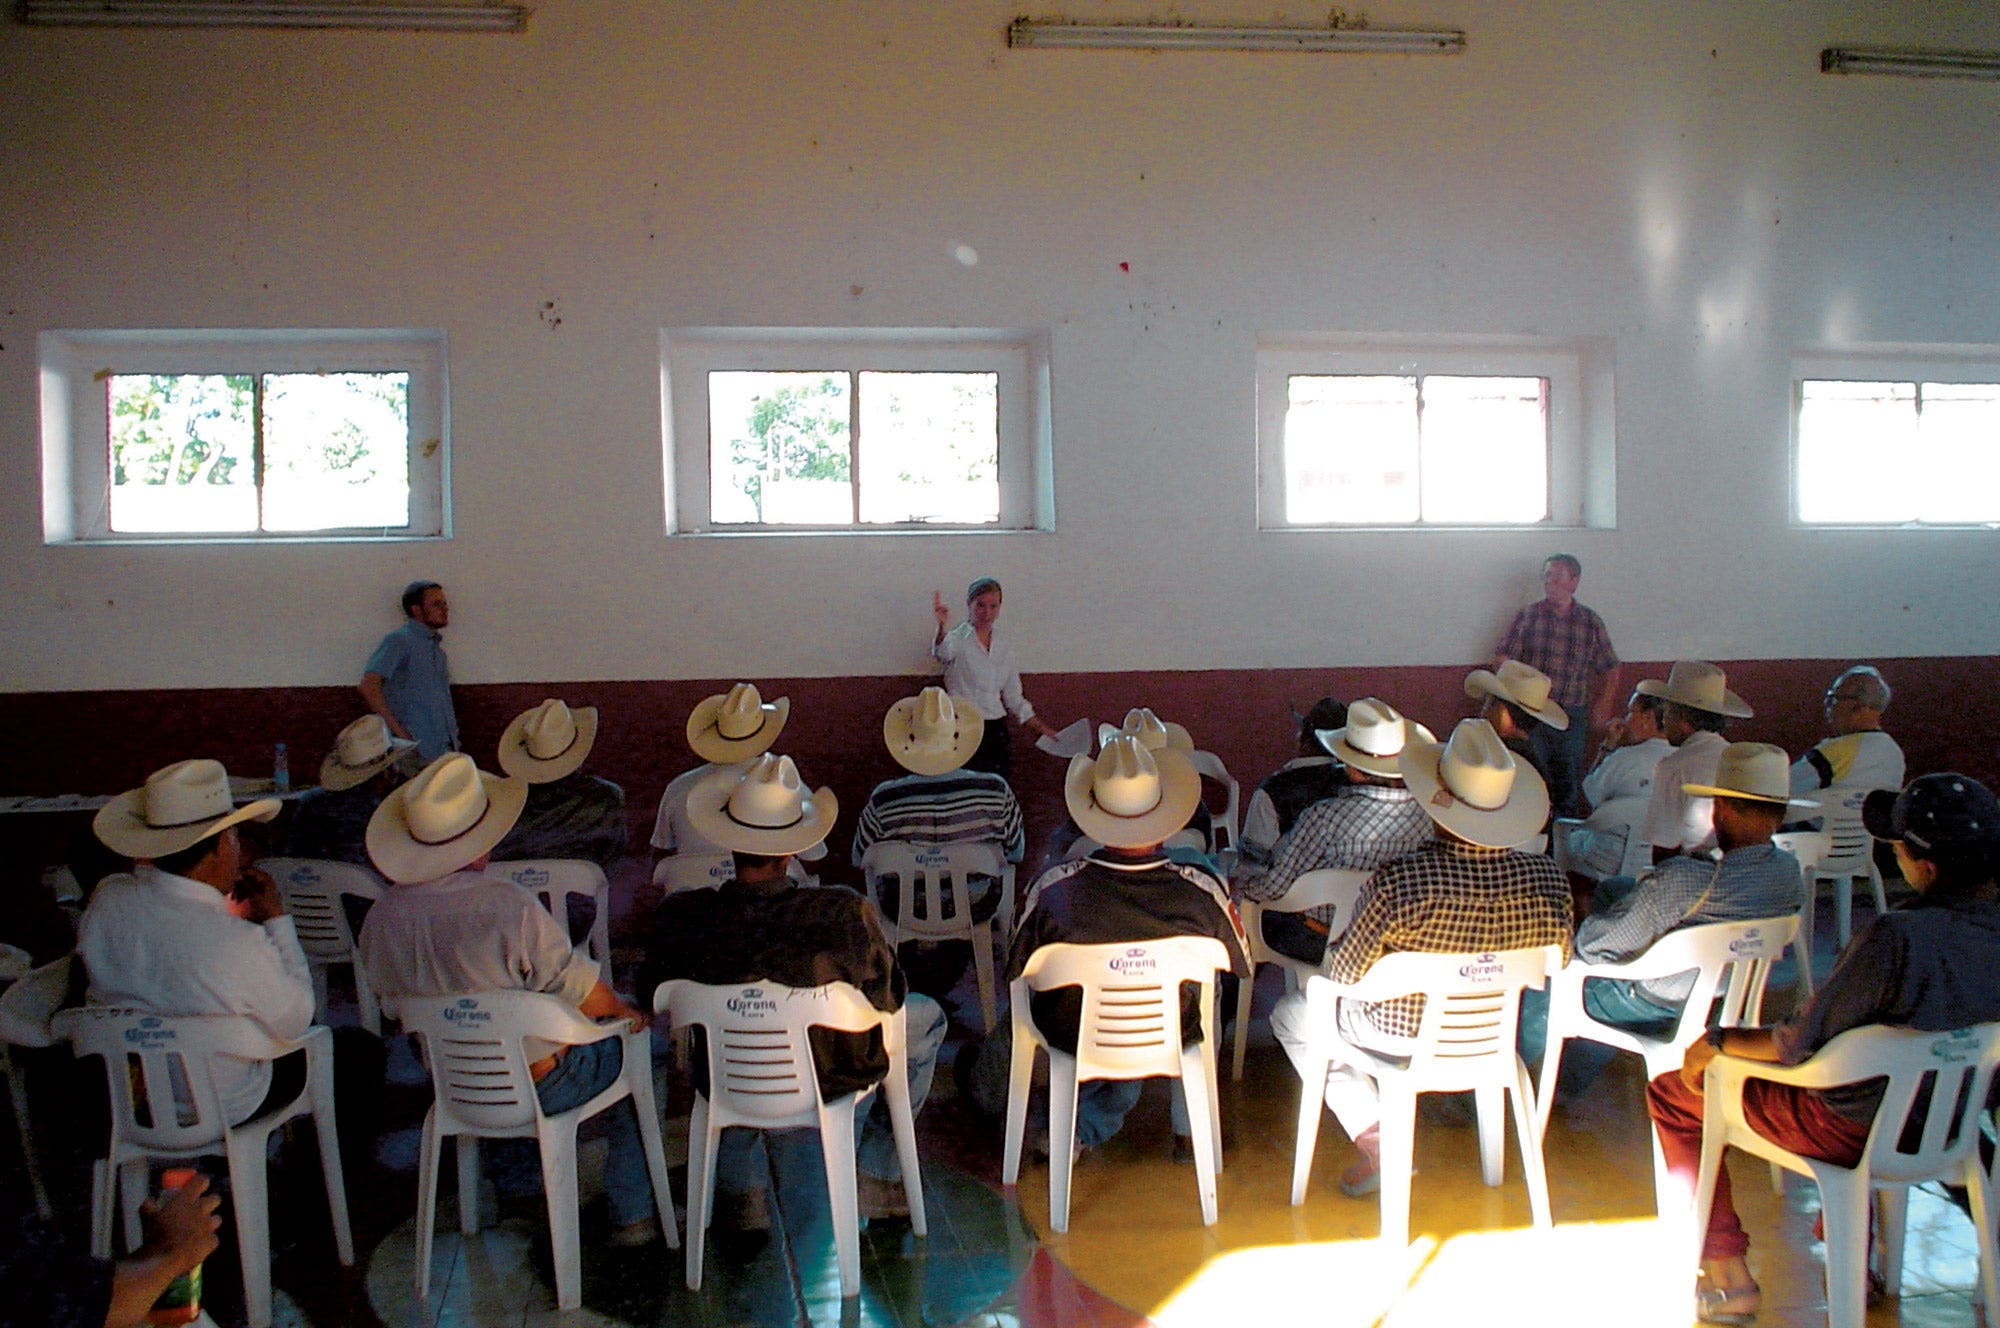 Meeting of men in cowboy hats